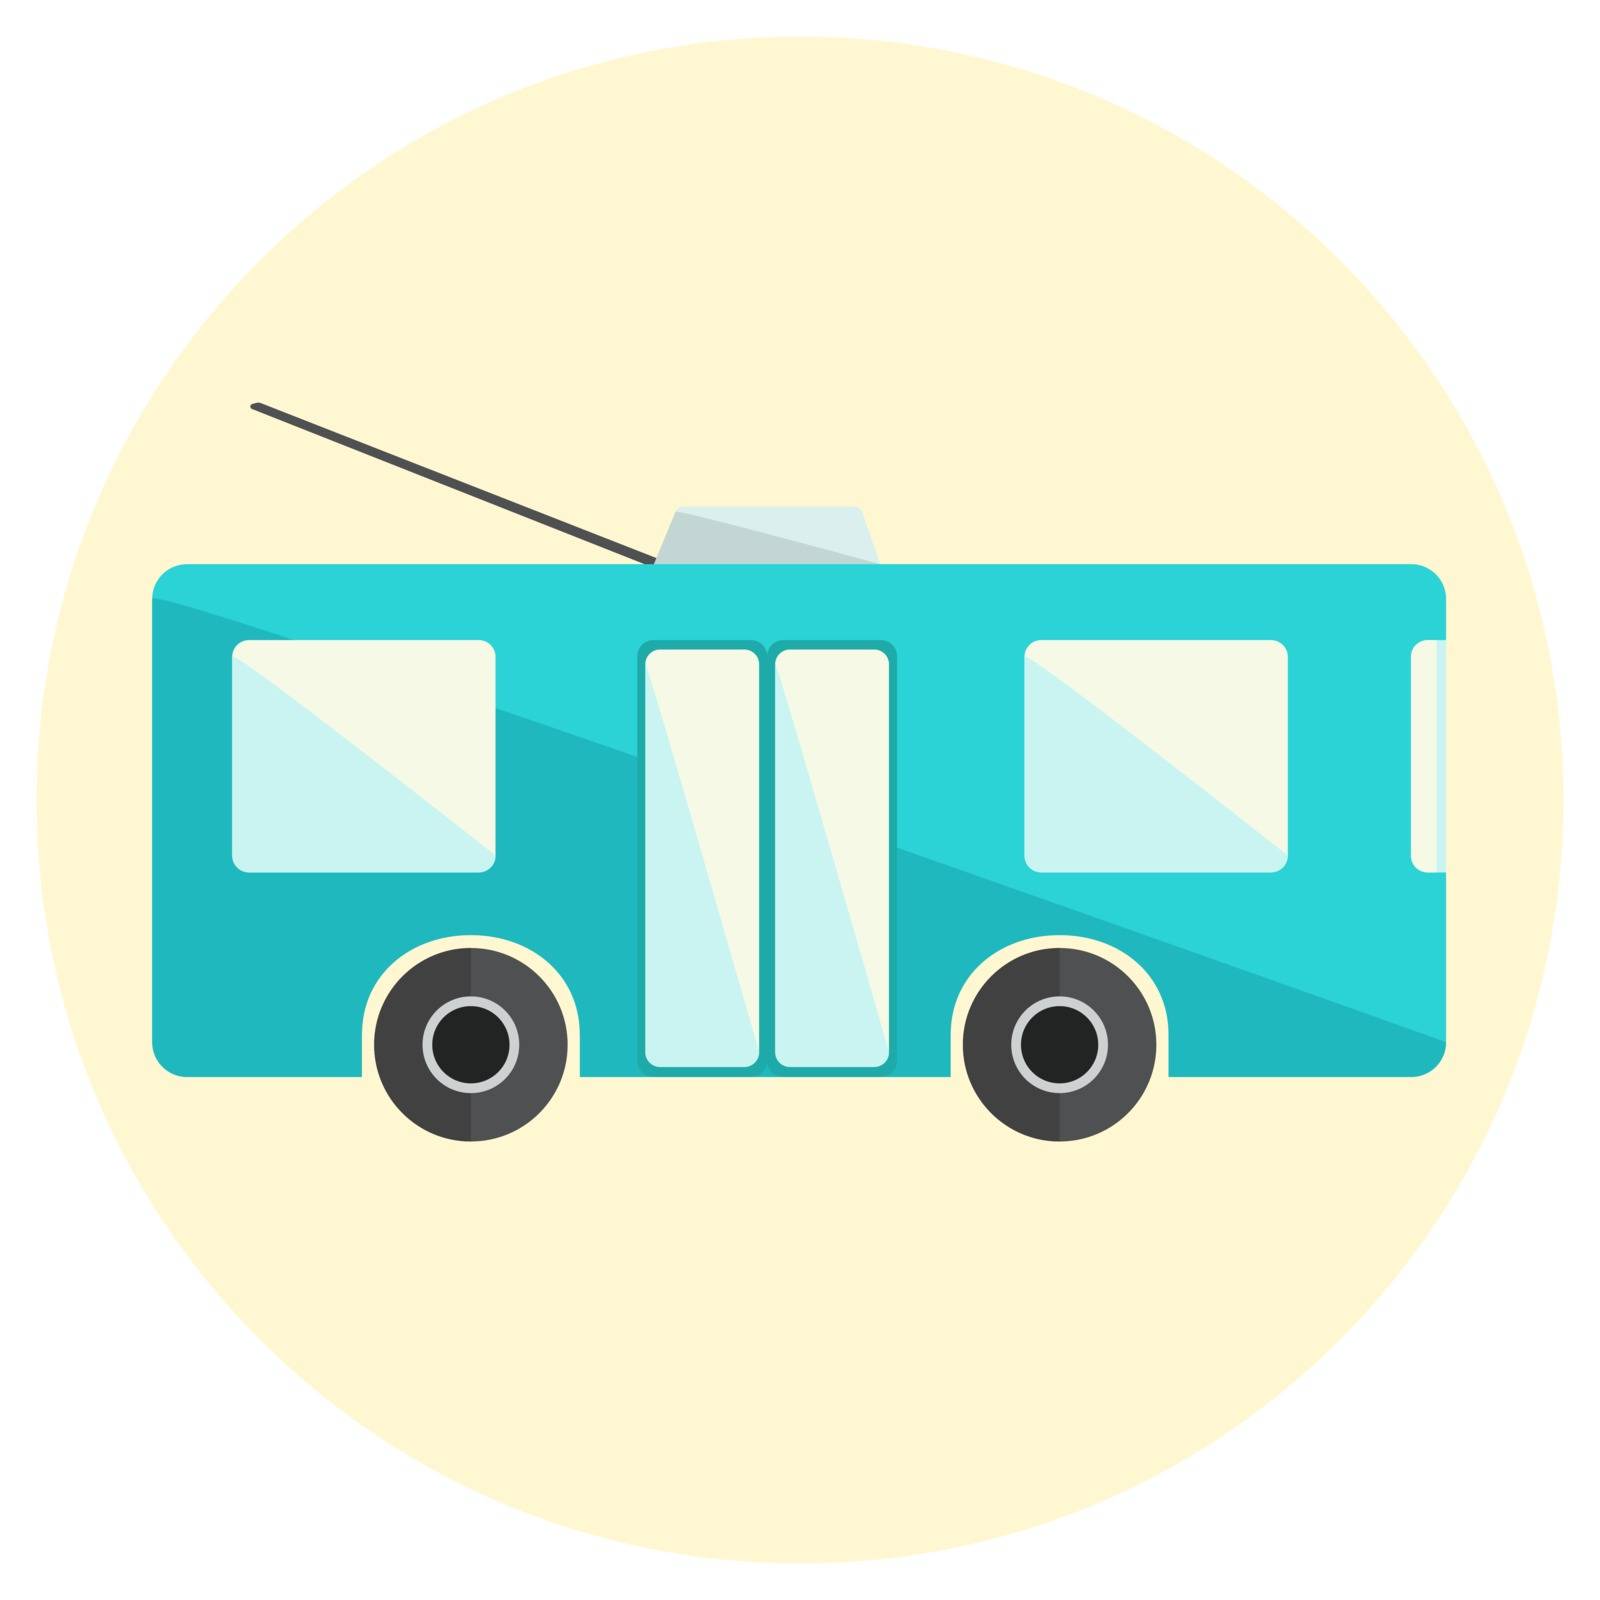 Cute little flat trolley bus icon by tatahnka